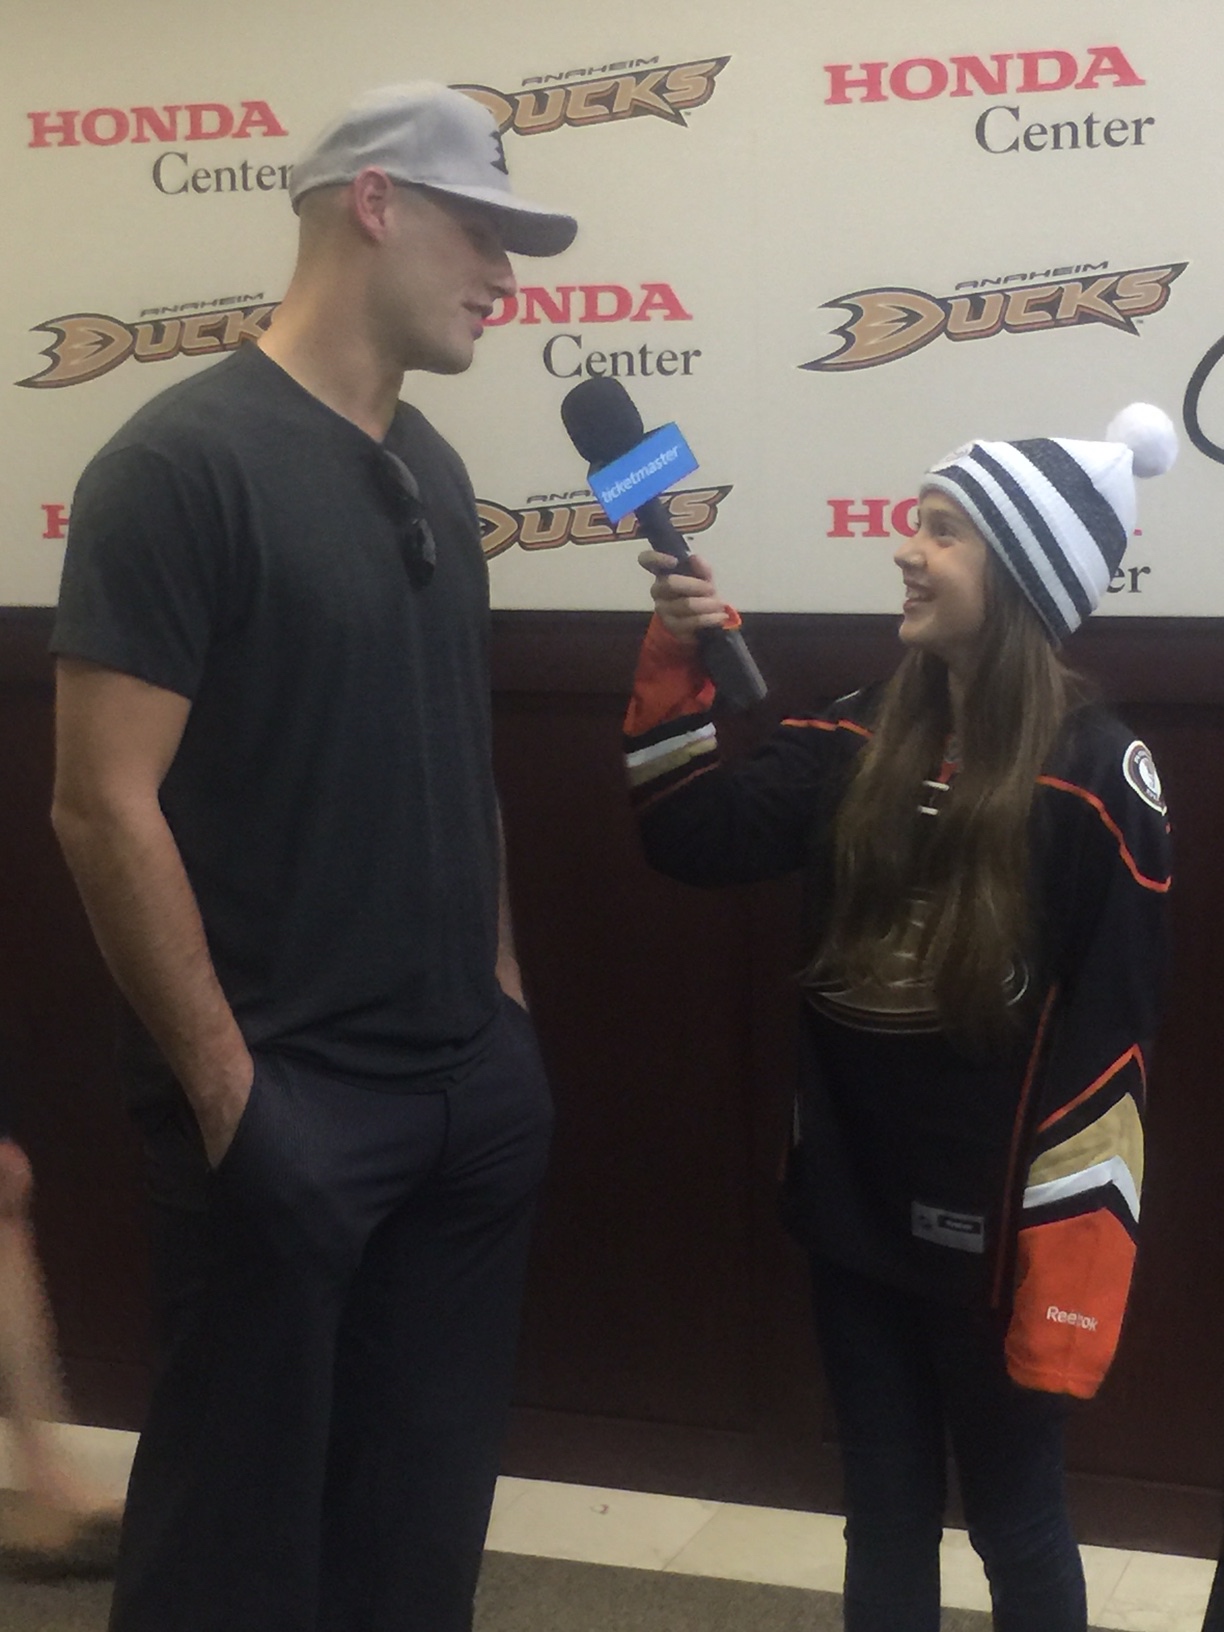 Hosting Minimaster on Ticketmaster interviewing Ryan Getzlaf of The Anaheim Ducks.